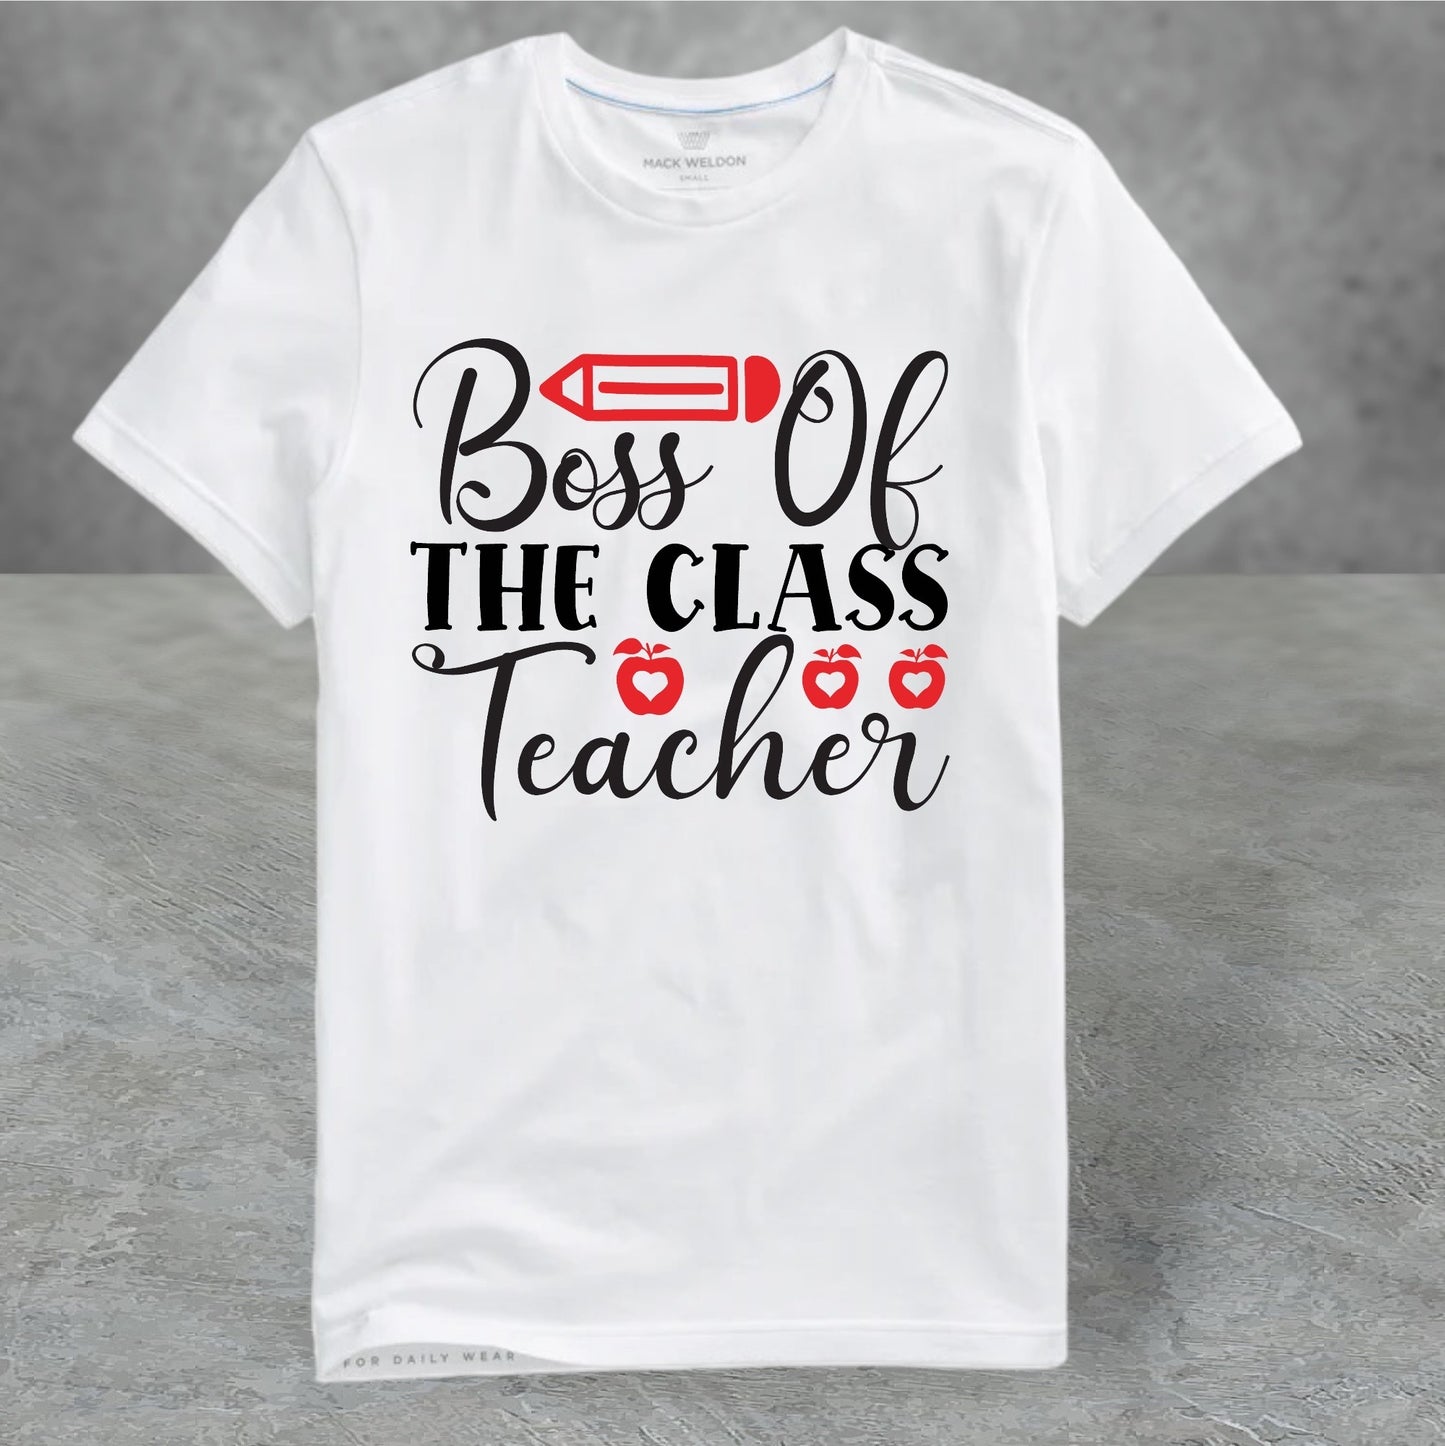 Boss of the class teacher